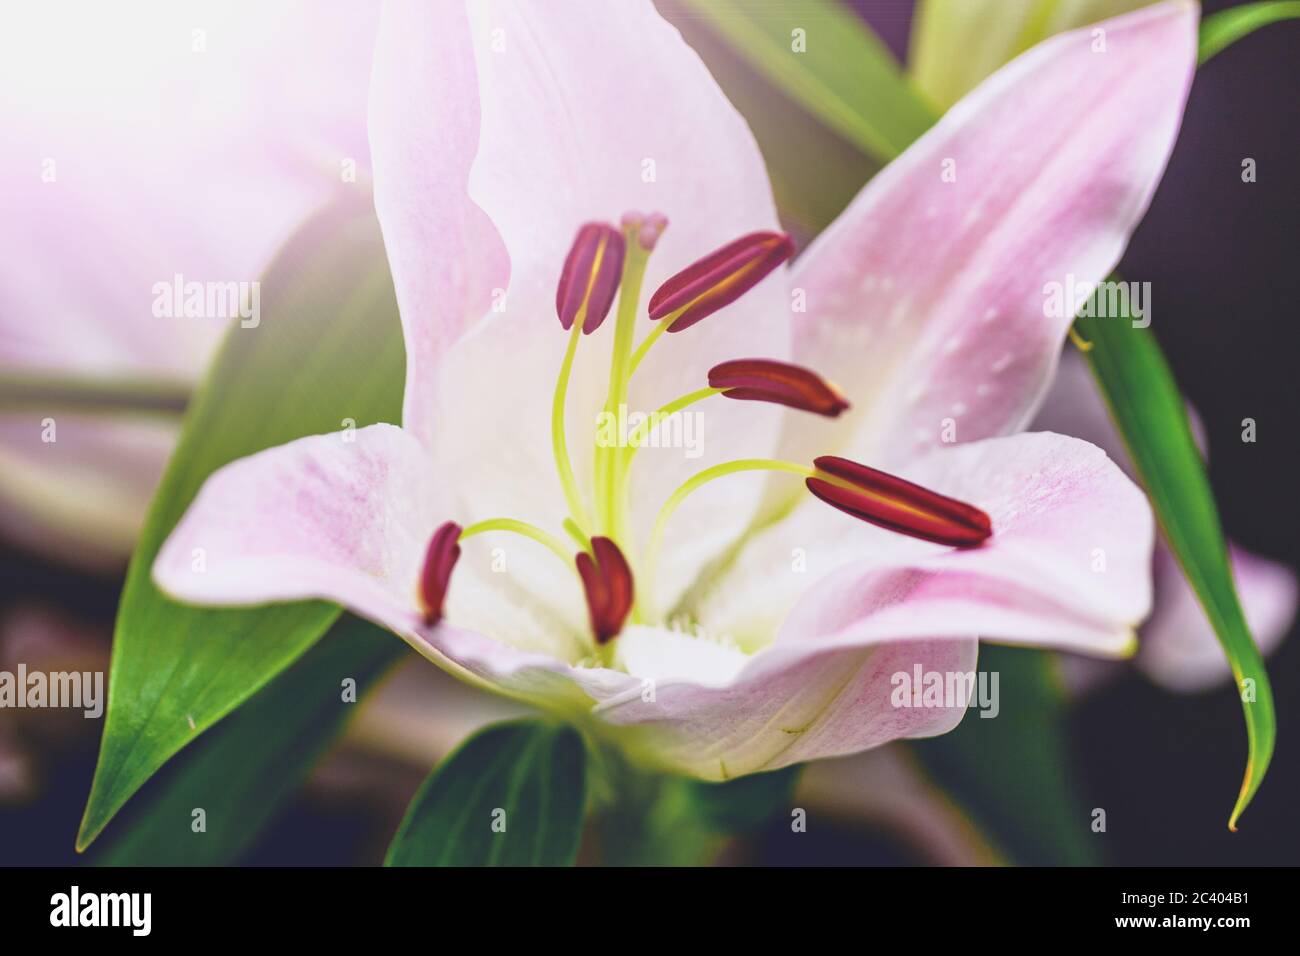 Fleur de lilly rose et floraison sur fond floral. Prise de vue macro. Banque D'Images